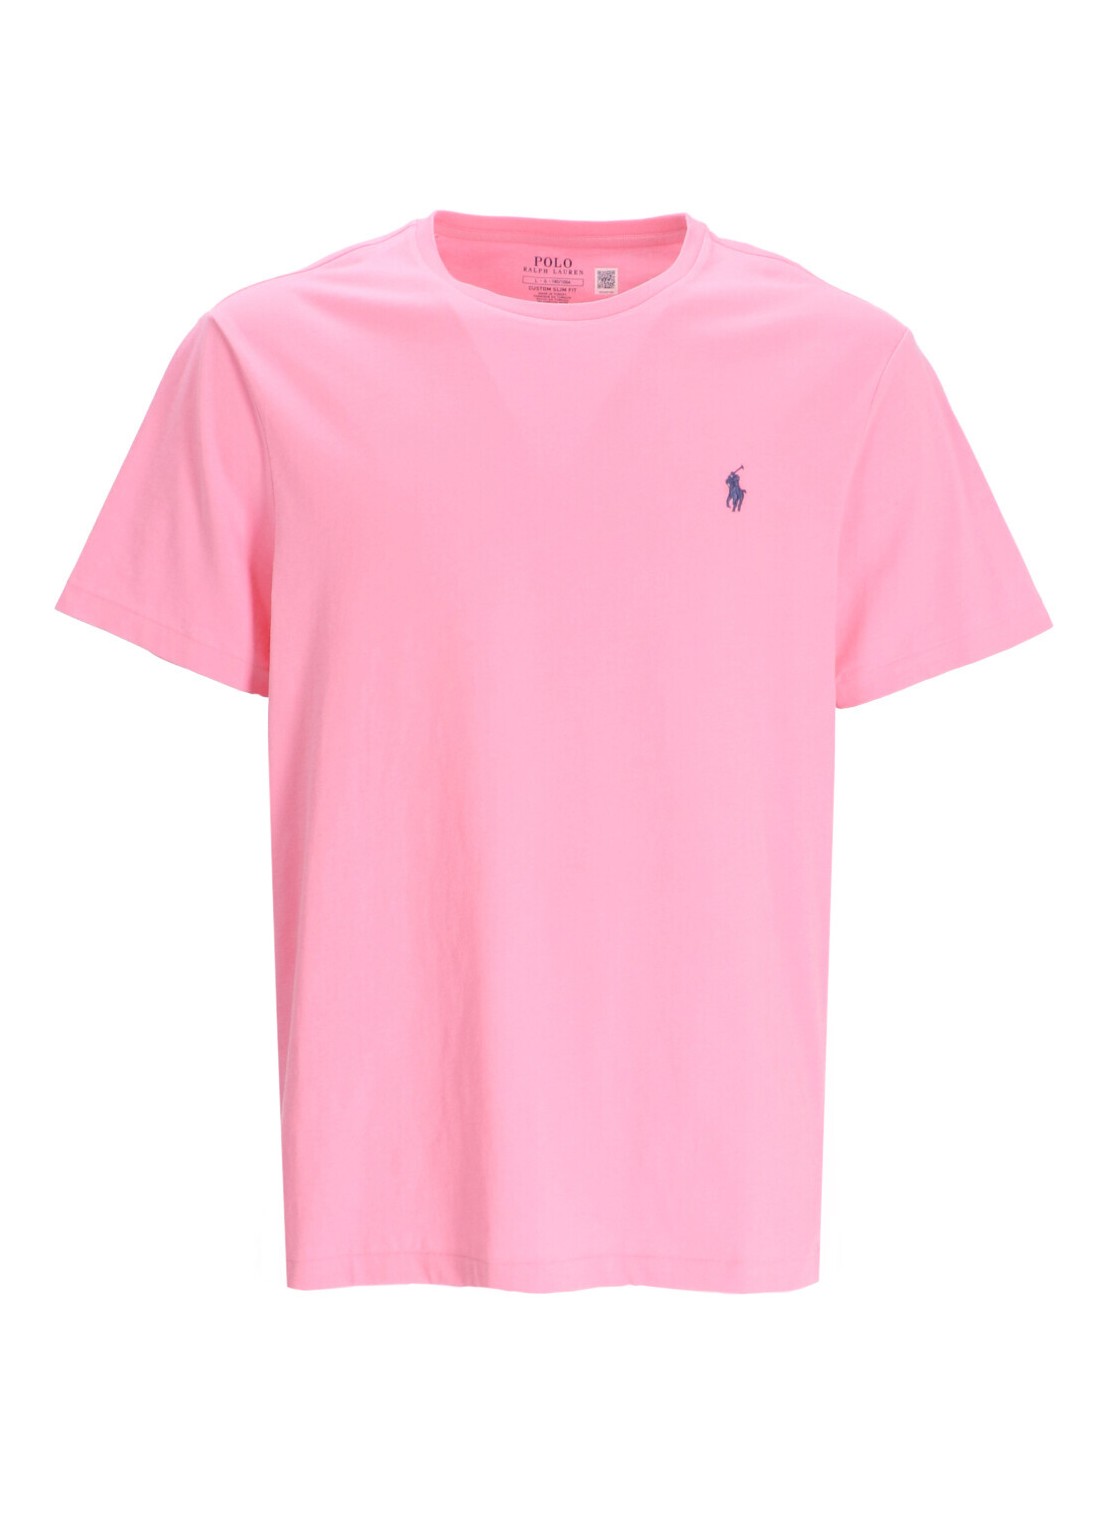 Camiseta polo ralph lauren t-shirt man sscncmslm2-short sleeve-t-shirt 710671438346 course pink c753